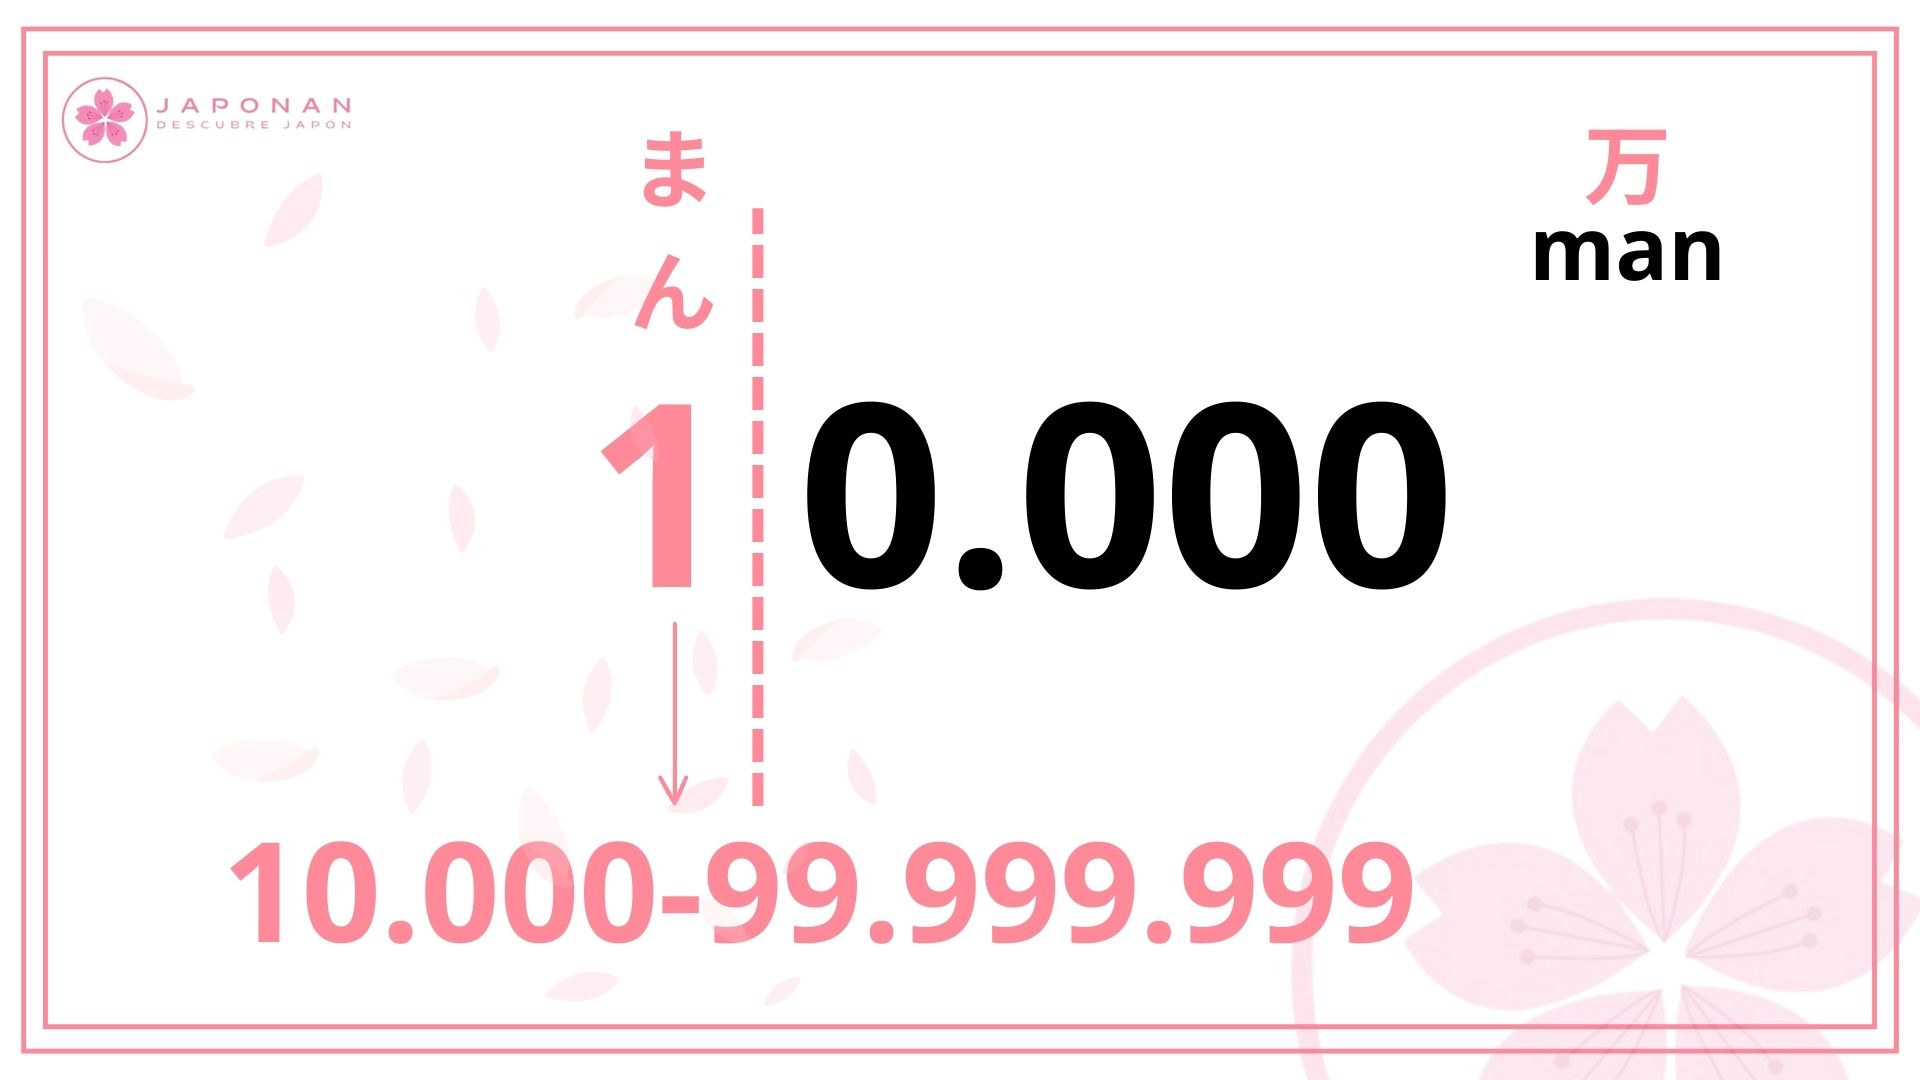 Man, 10.000, números en japonés